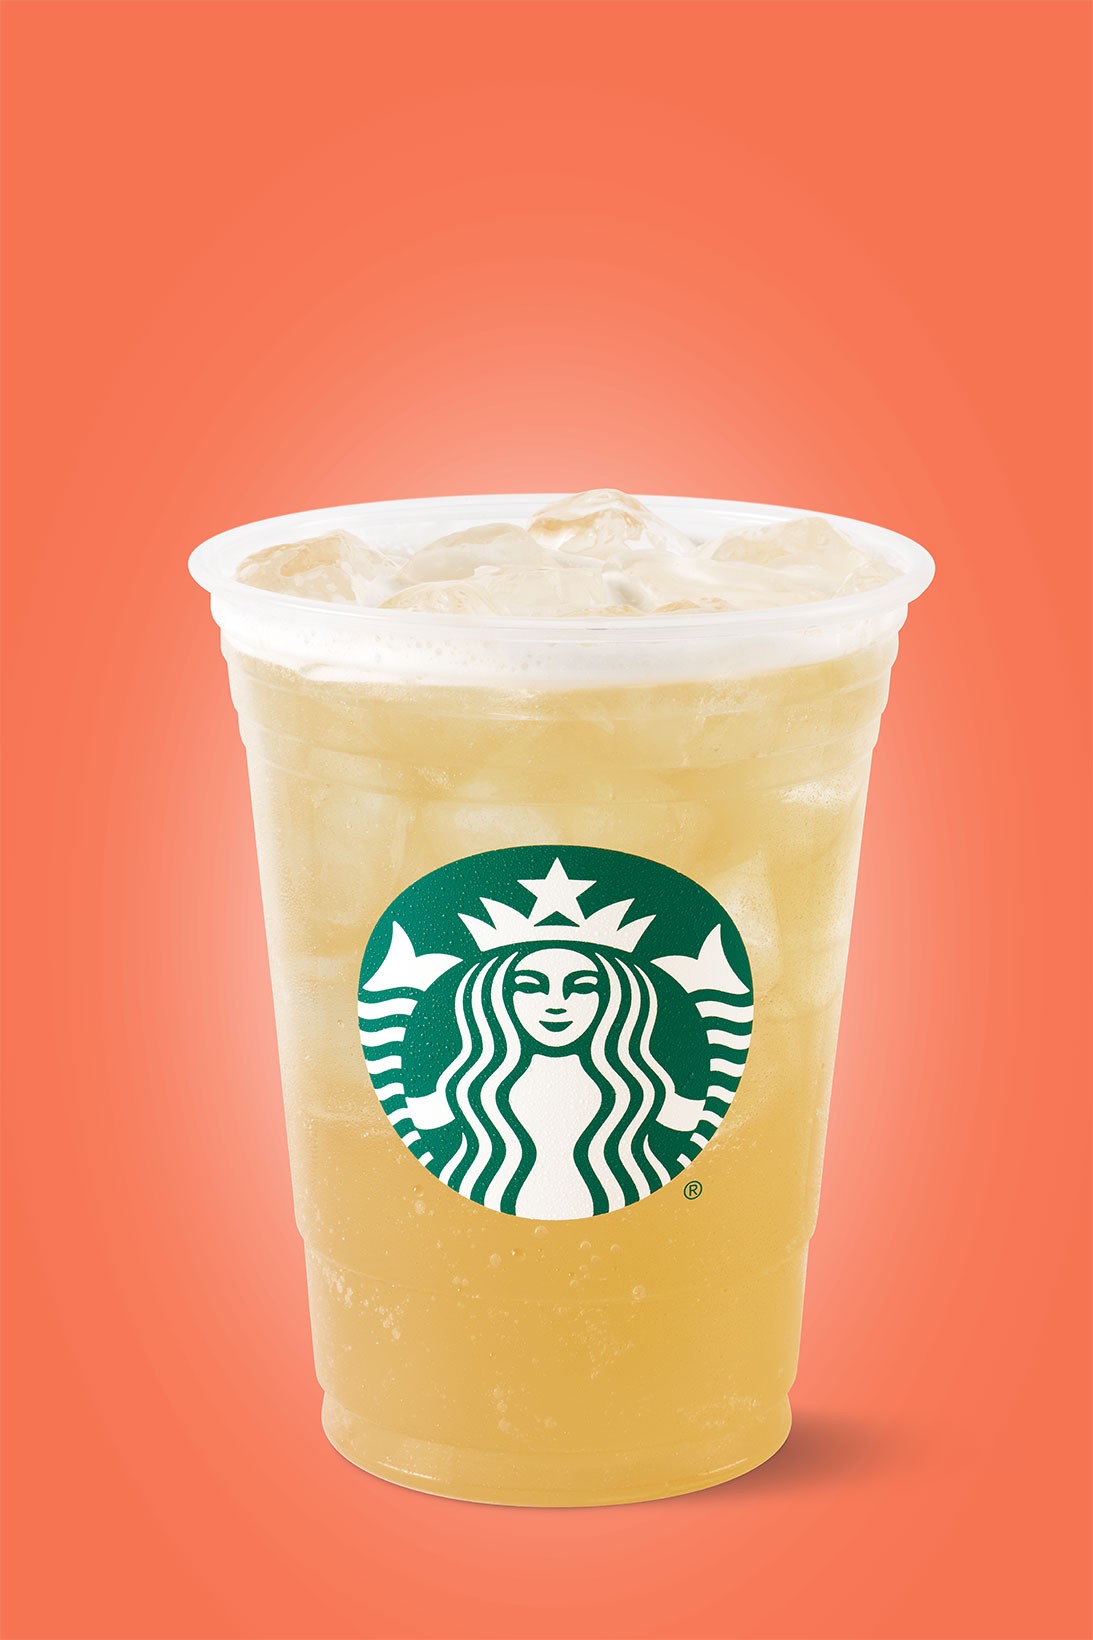 More new drinks in the Starbucks repertoire. 